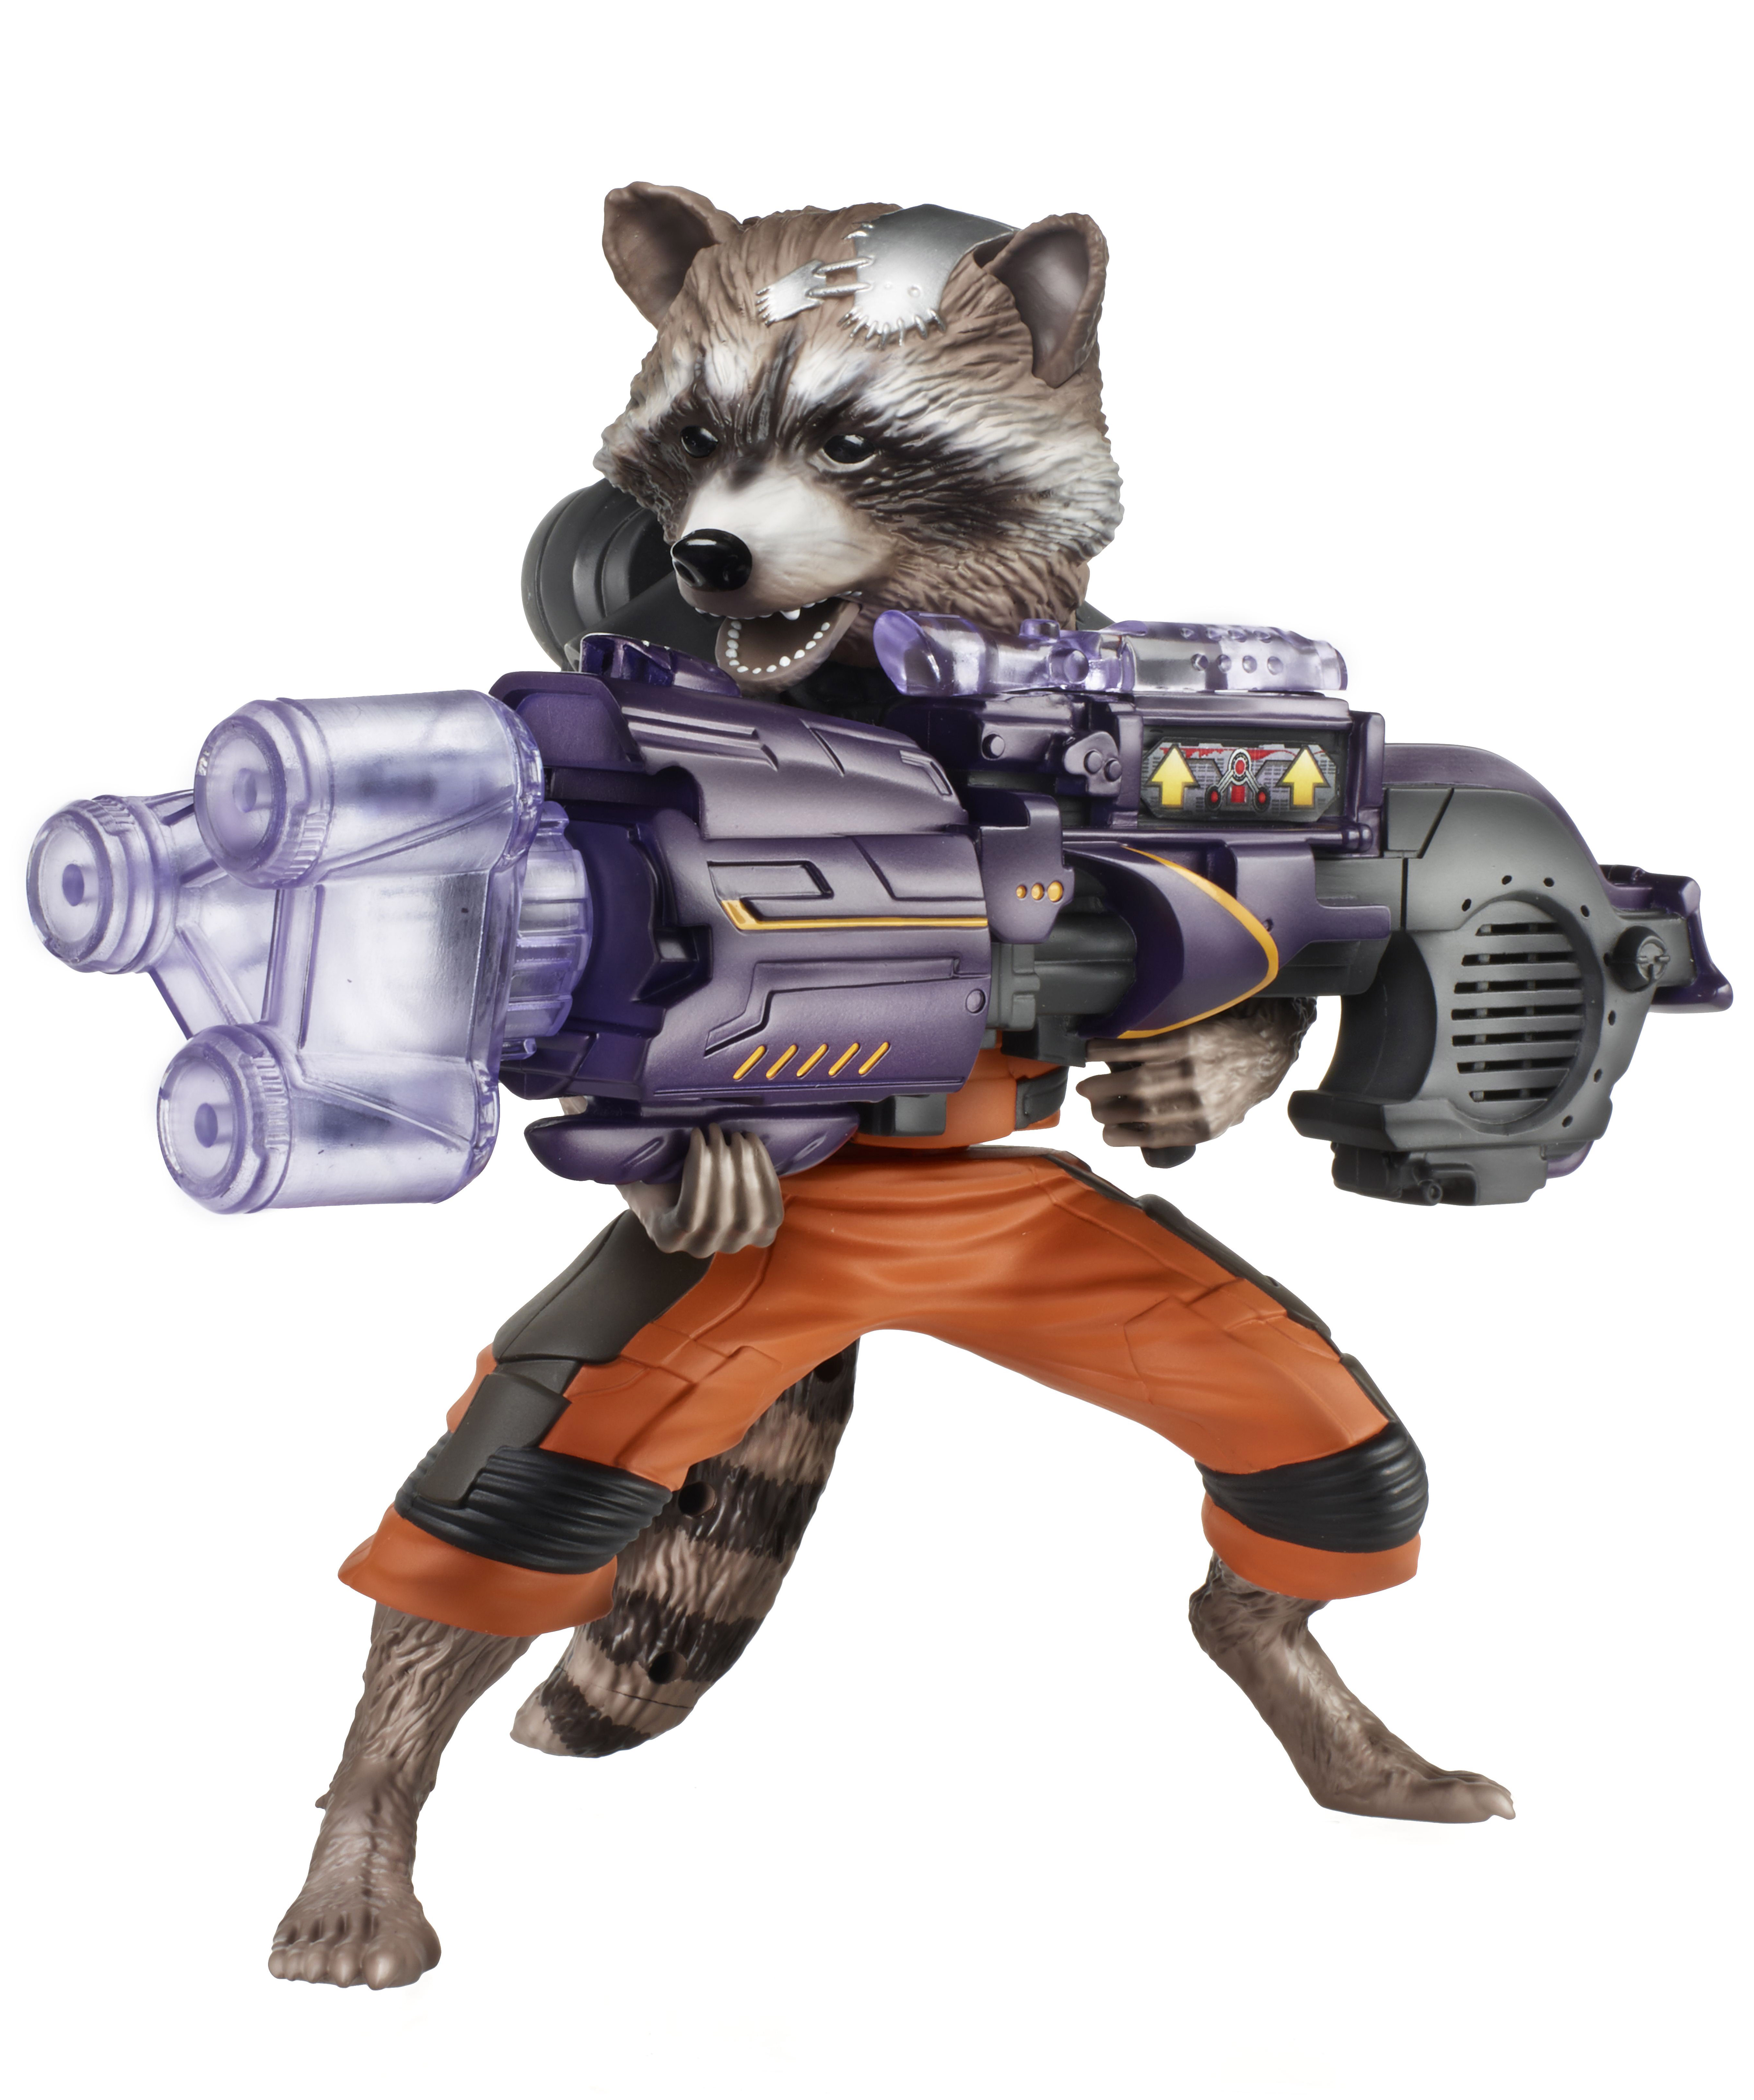 raccoon plush target